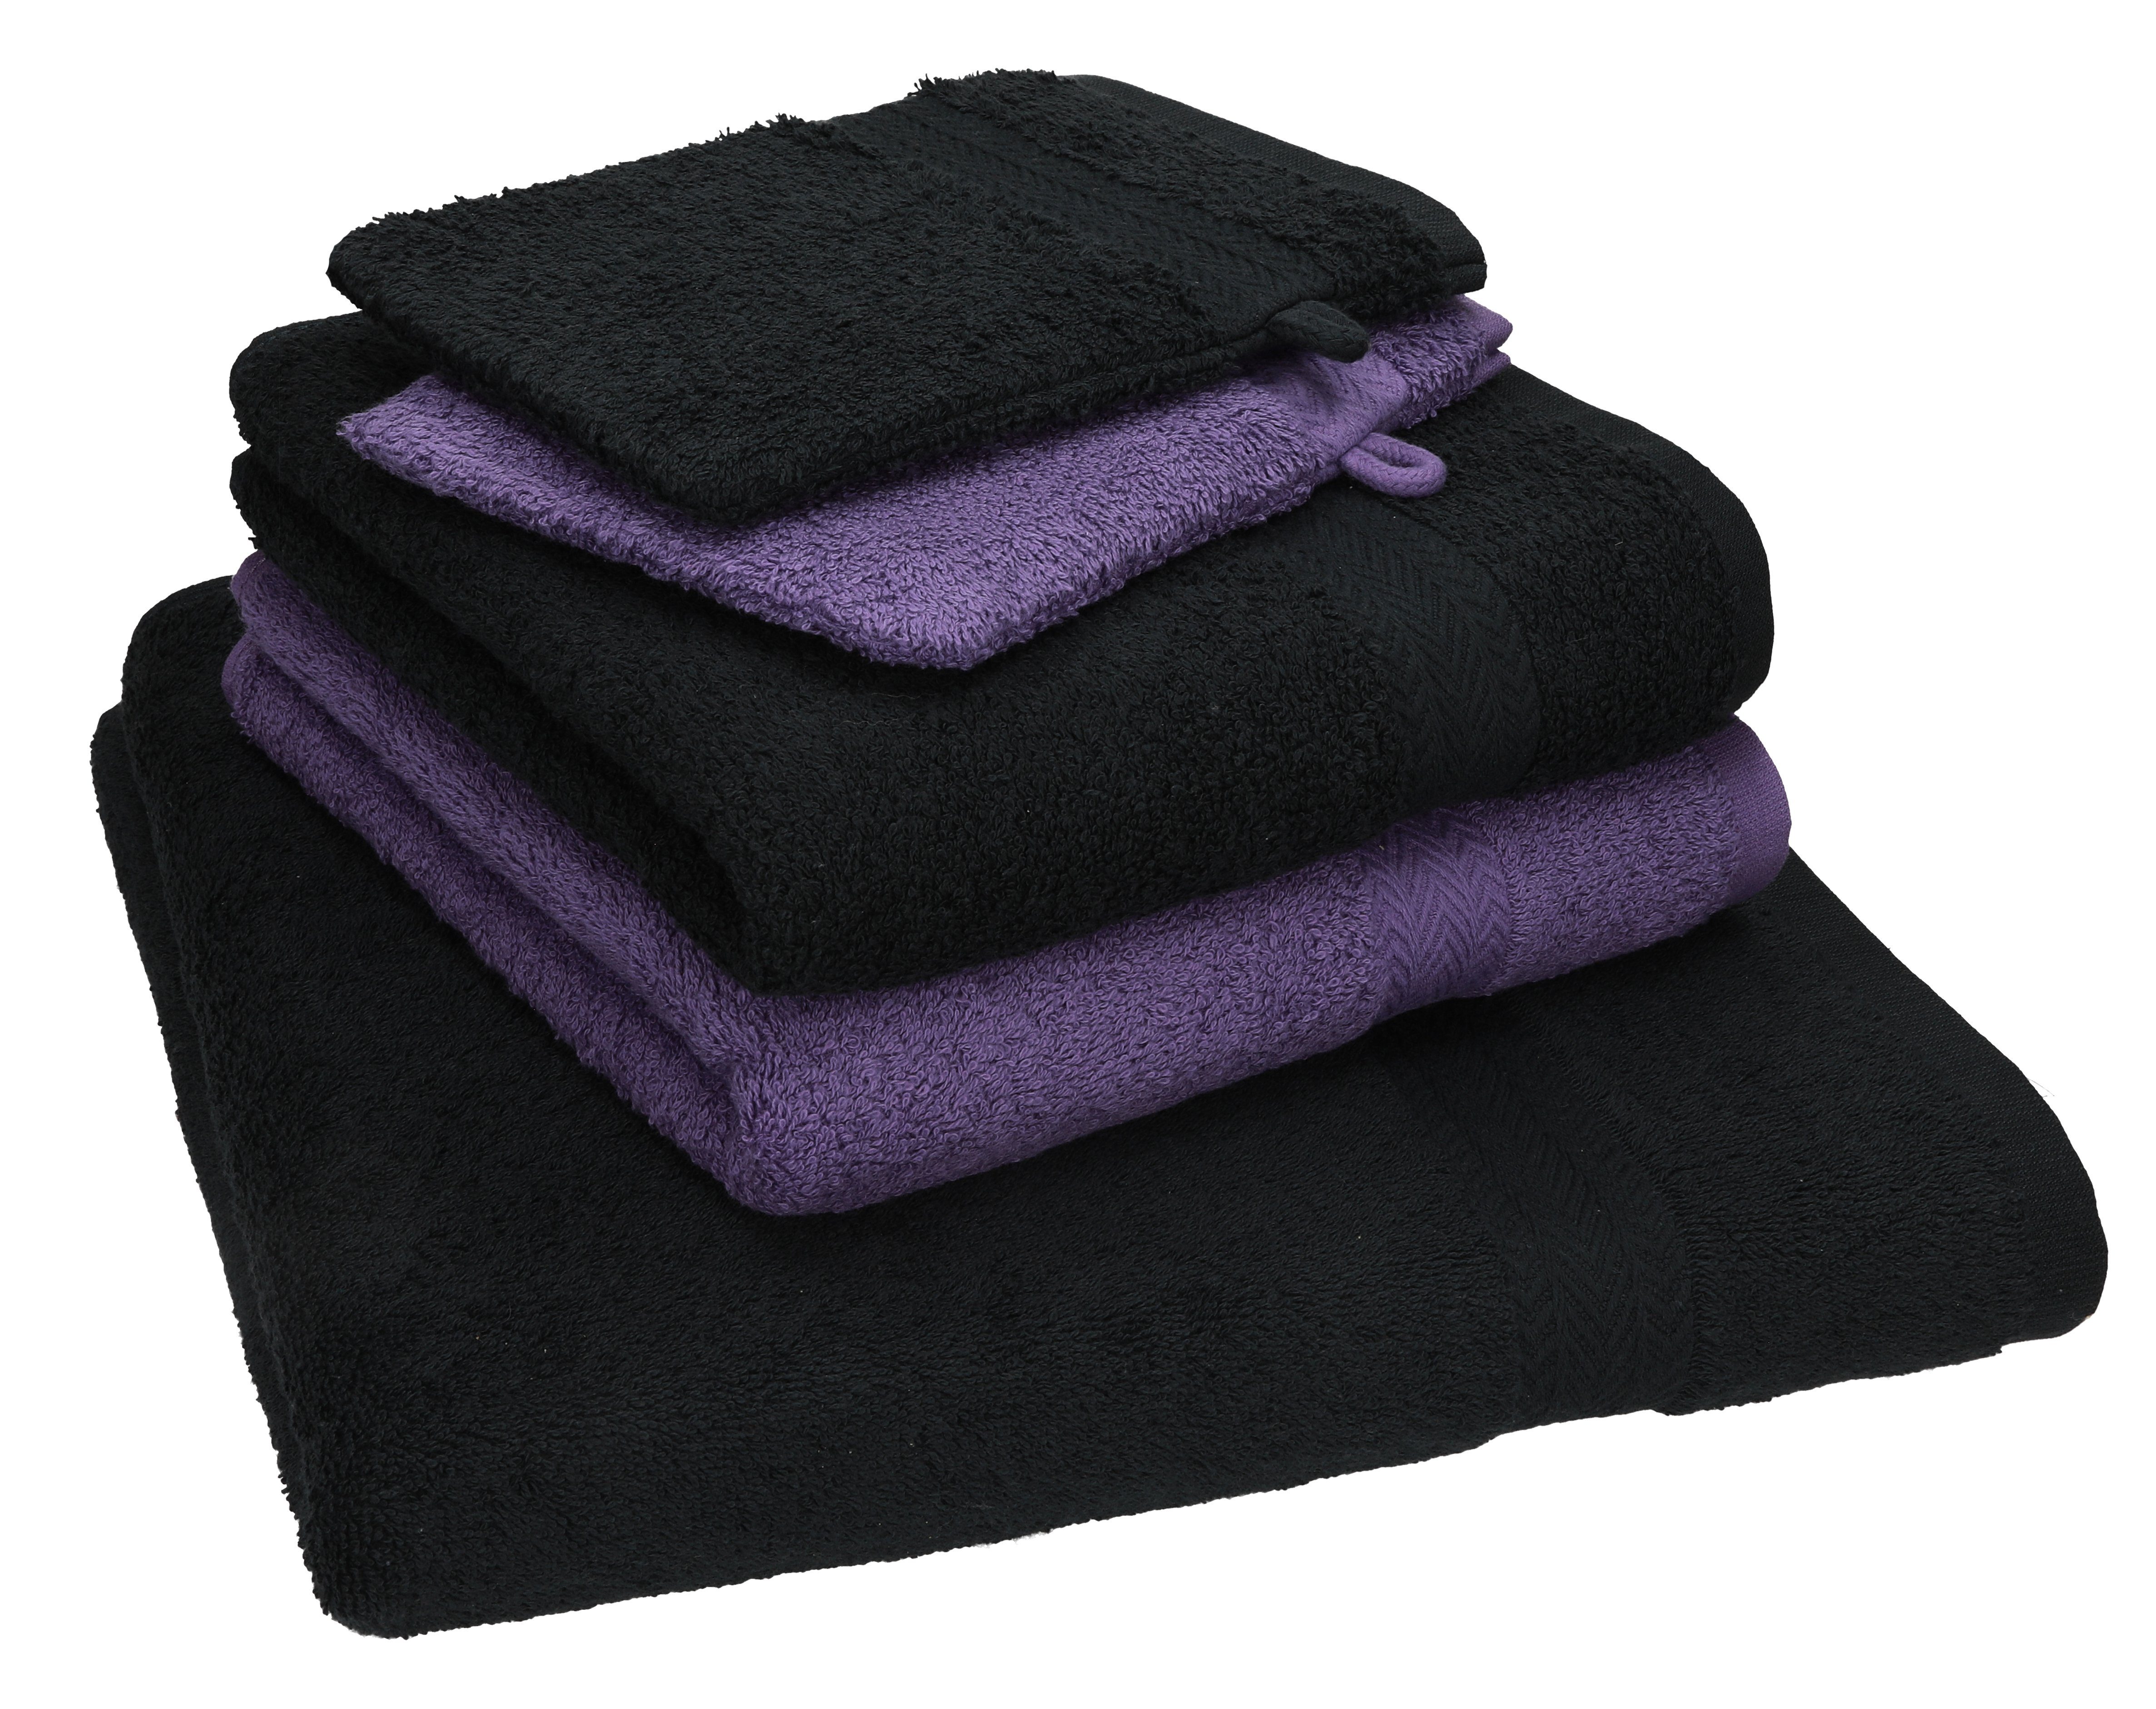 Handtuch schwarz-lila 1 TLG. Betz 100% 5 Duschtuch 2 100% Baumwolle Single Set Set 2 Baumwolle Pack Handtücher Handtuch Waschhandschuhe,